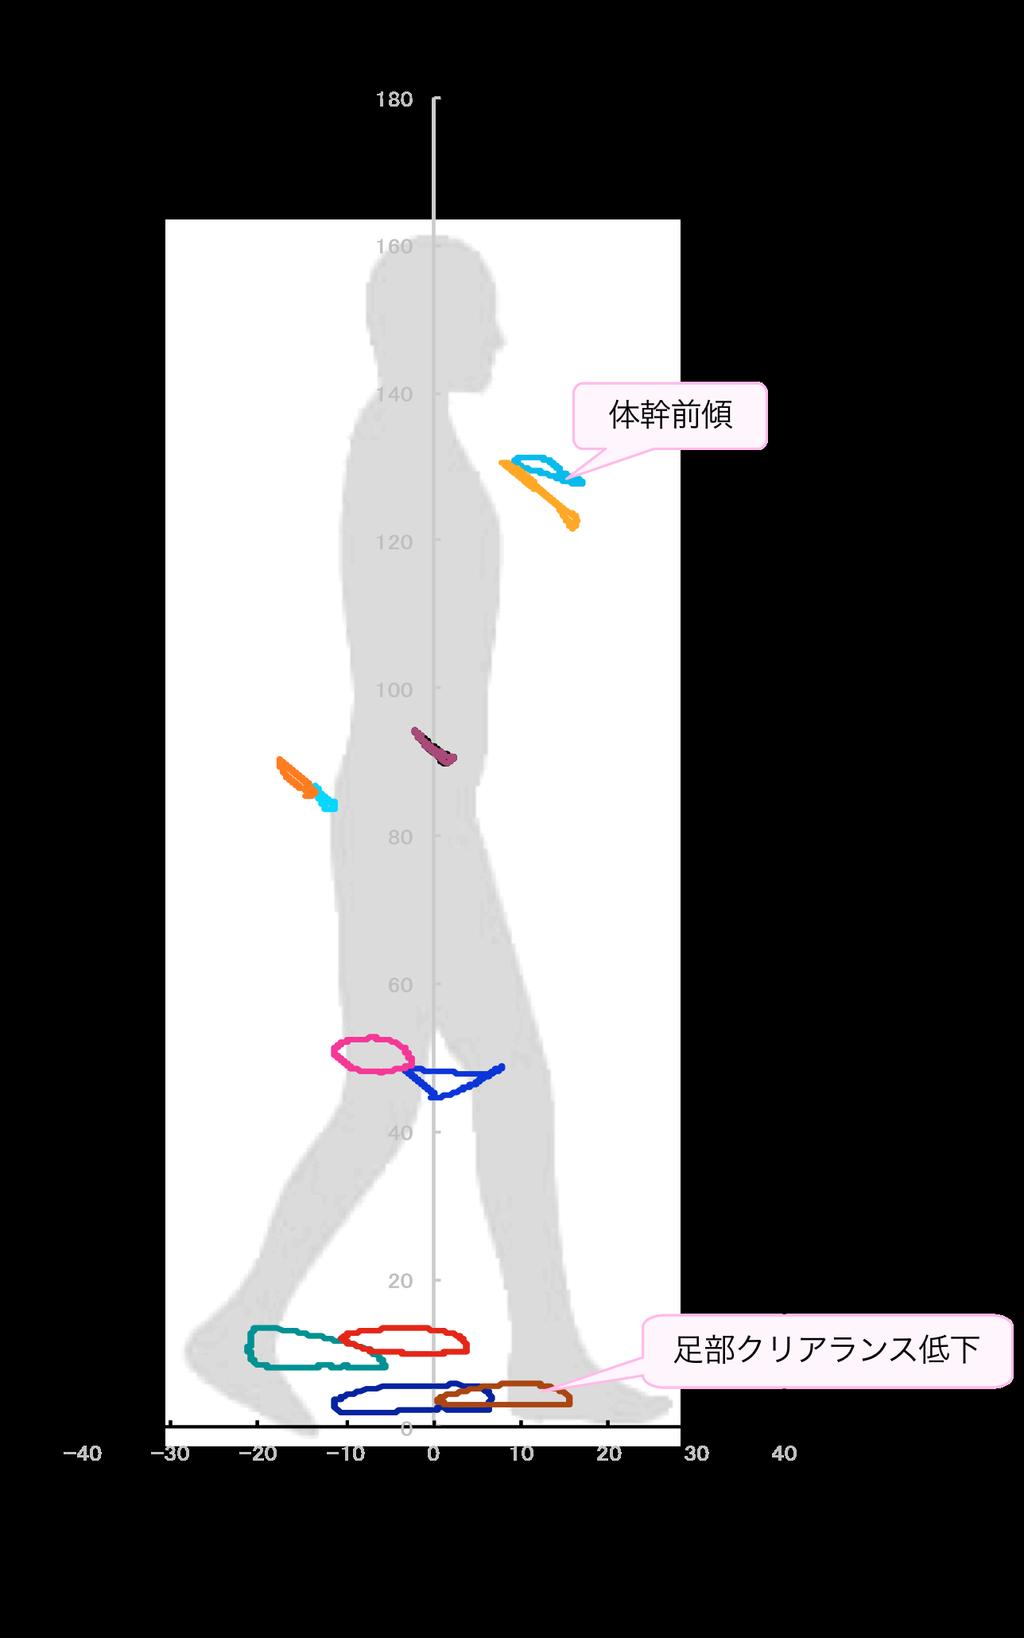 麻痺側の骨盤挙上 図 7 は 左右の股関 節のリサージュ図形の位置関係で判断でき た 内側ホイップ 図 9 は 麻痺側 左側